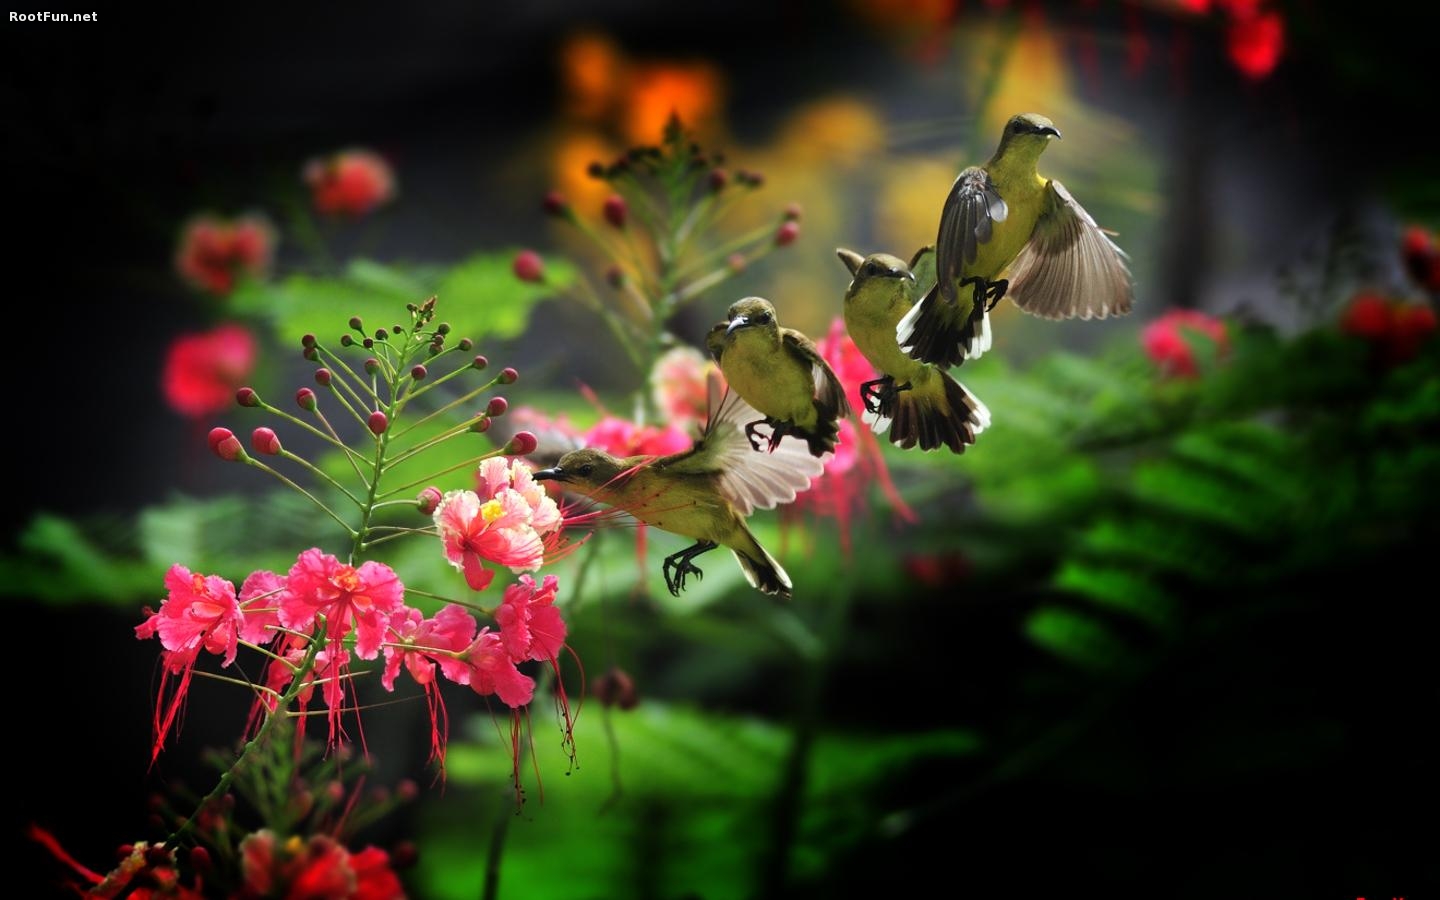 Hummingbird Picture